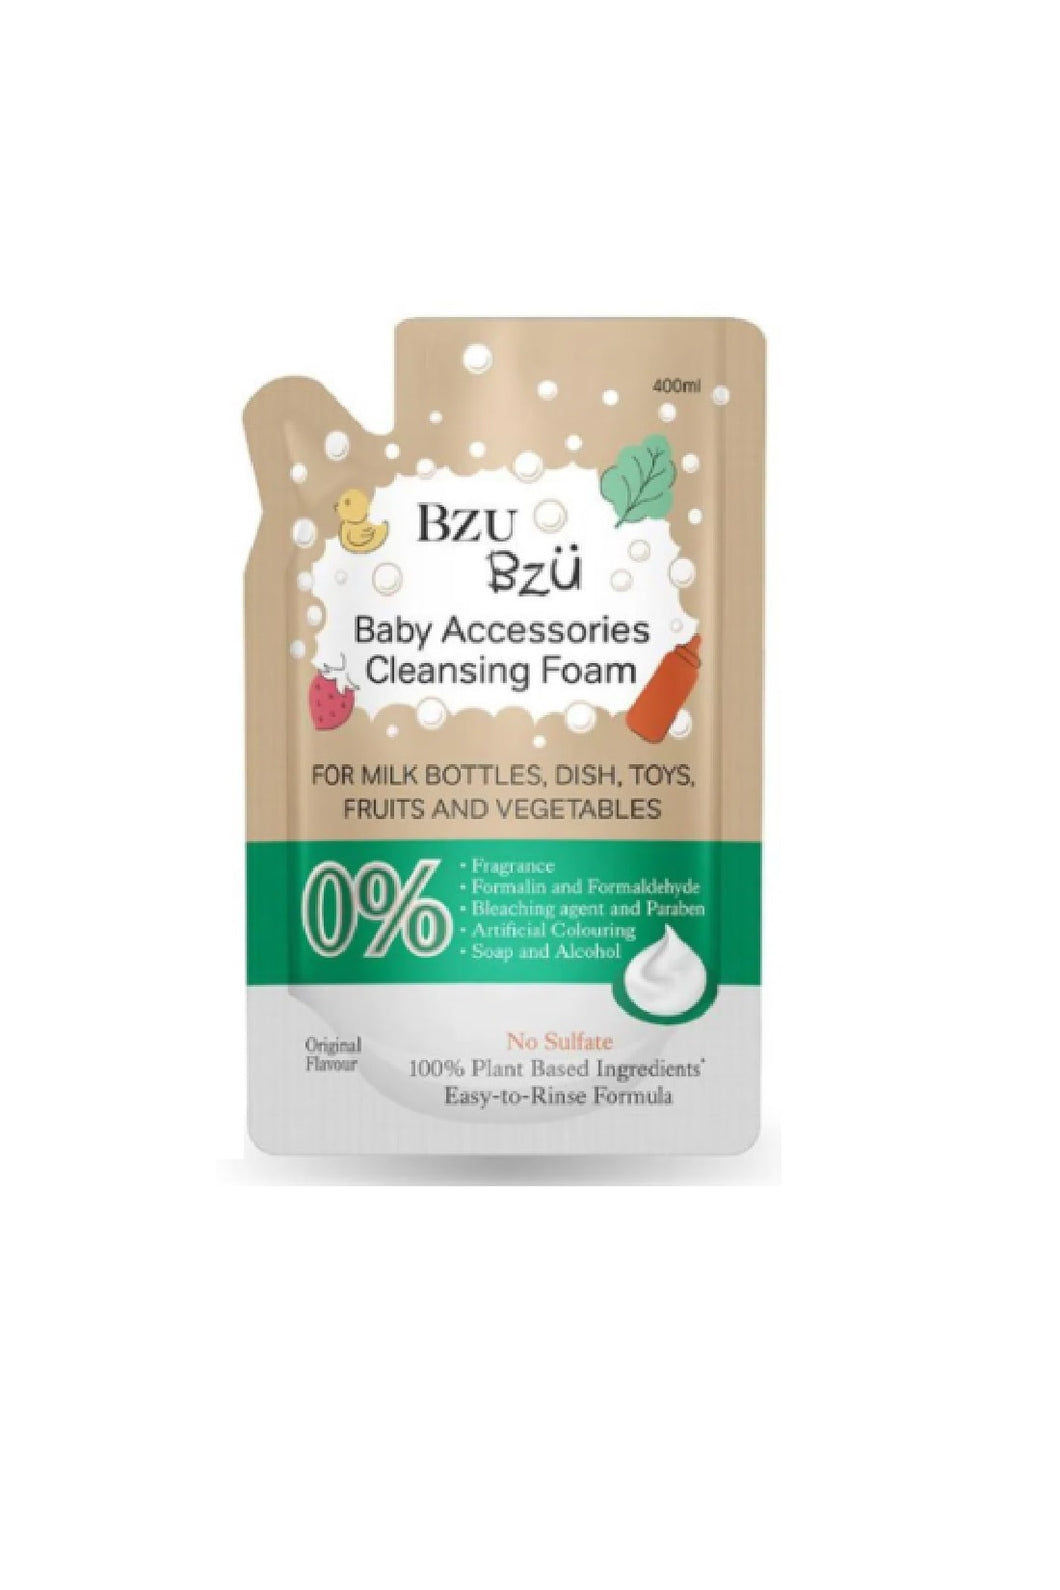 Bzu Bzu Baby Accessories Cleansing Foam 400Ml Refill Originanl Flavour